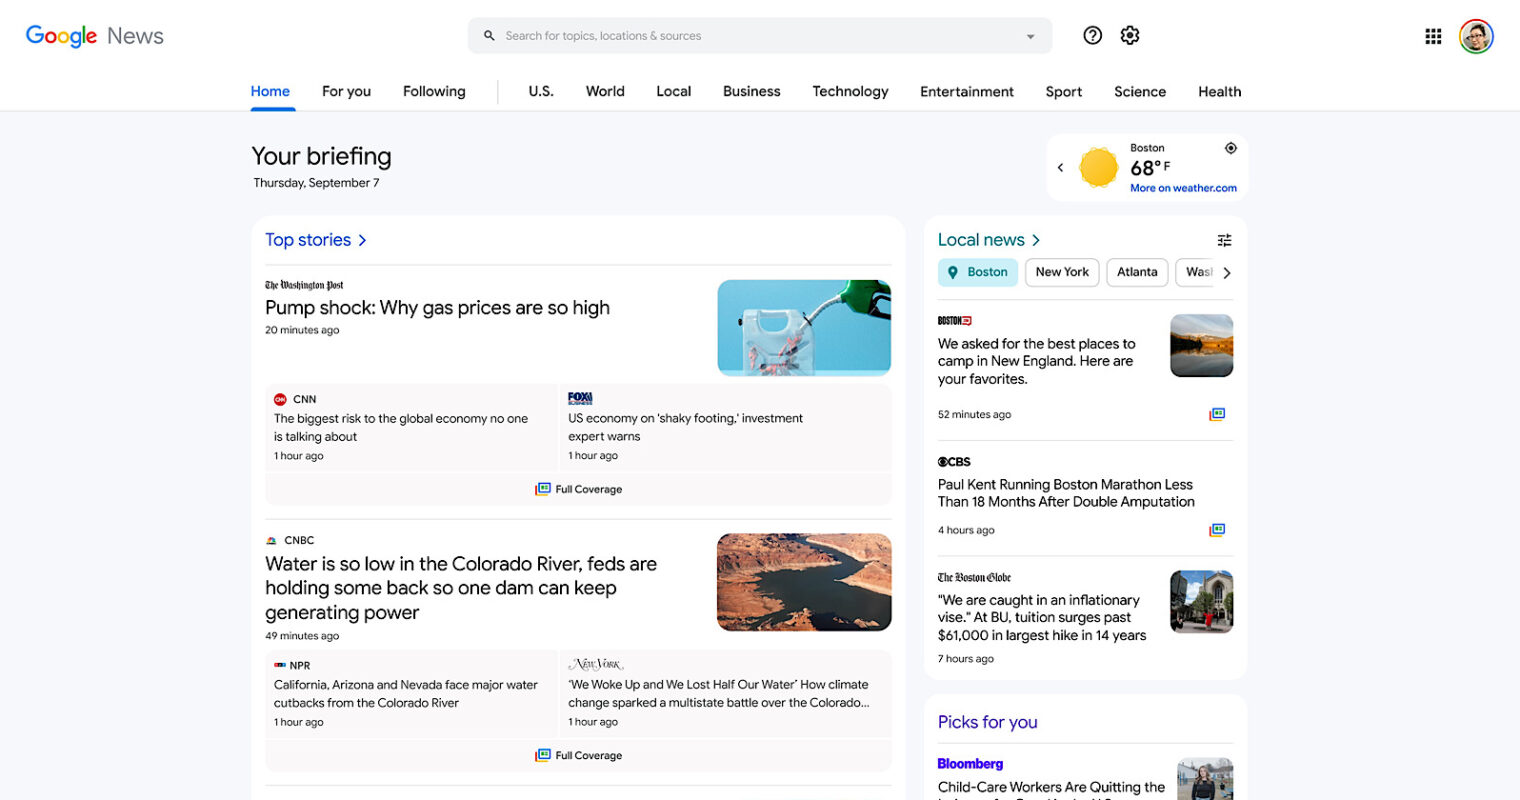 Giao diện mới của Google News trên desktop có gì khác biệt